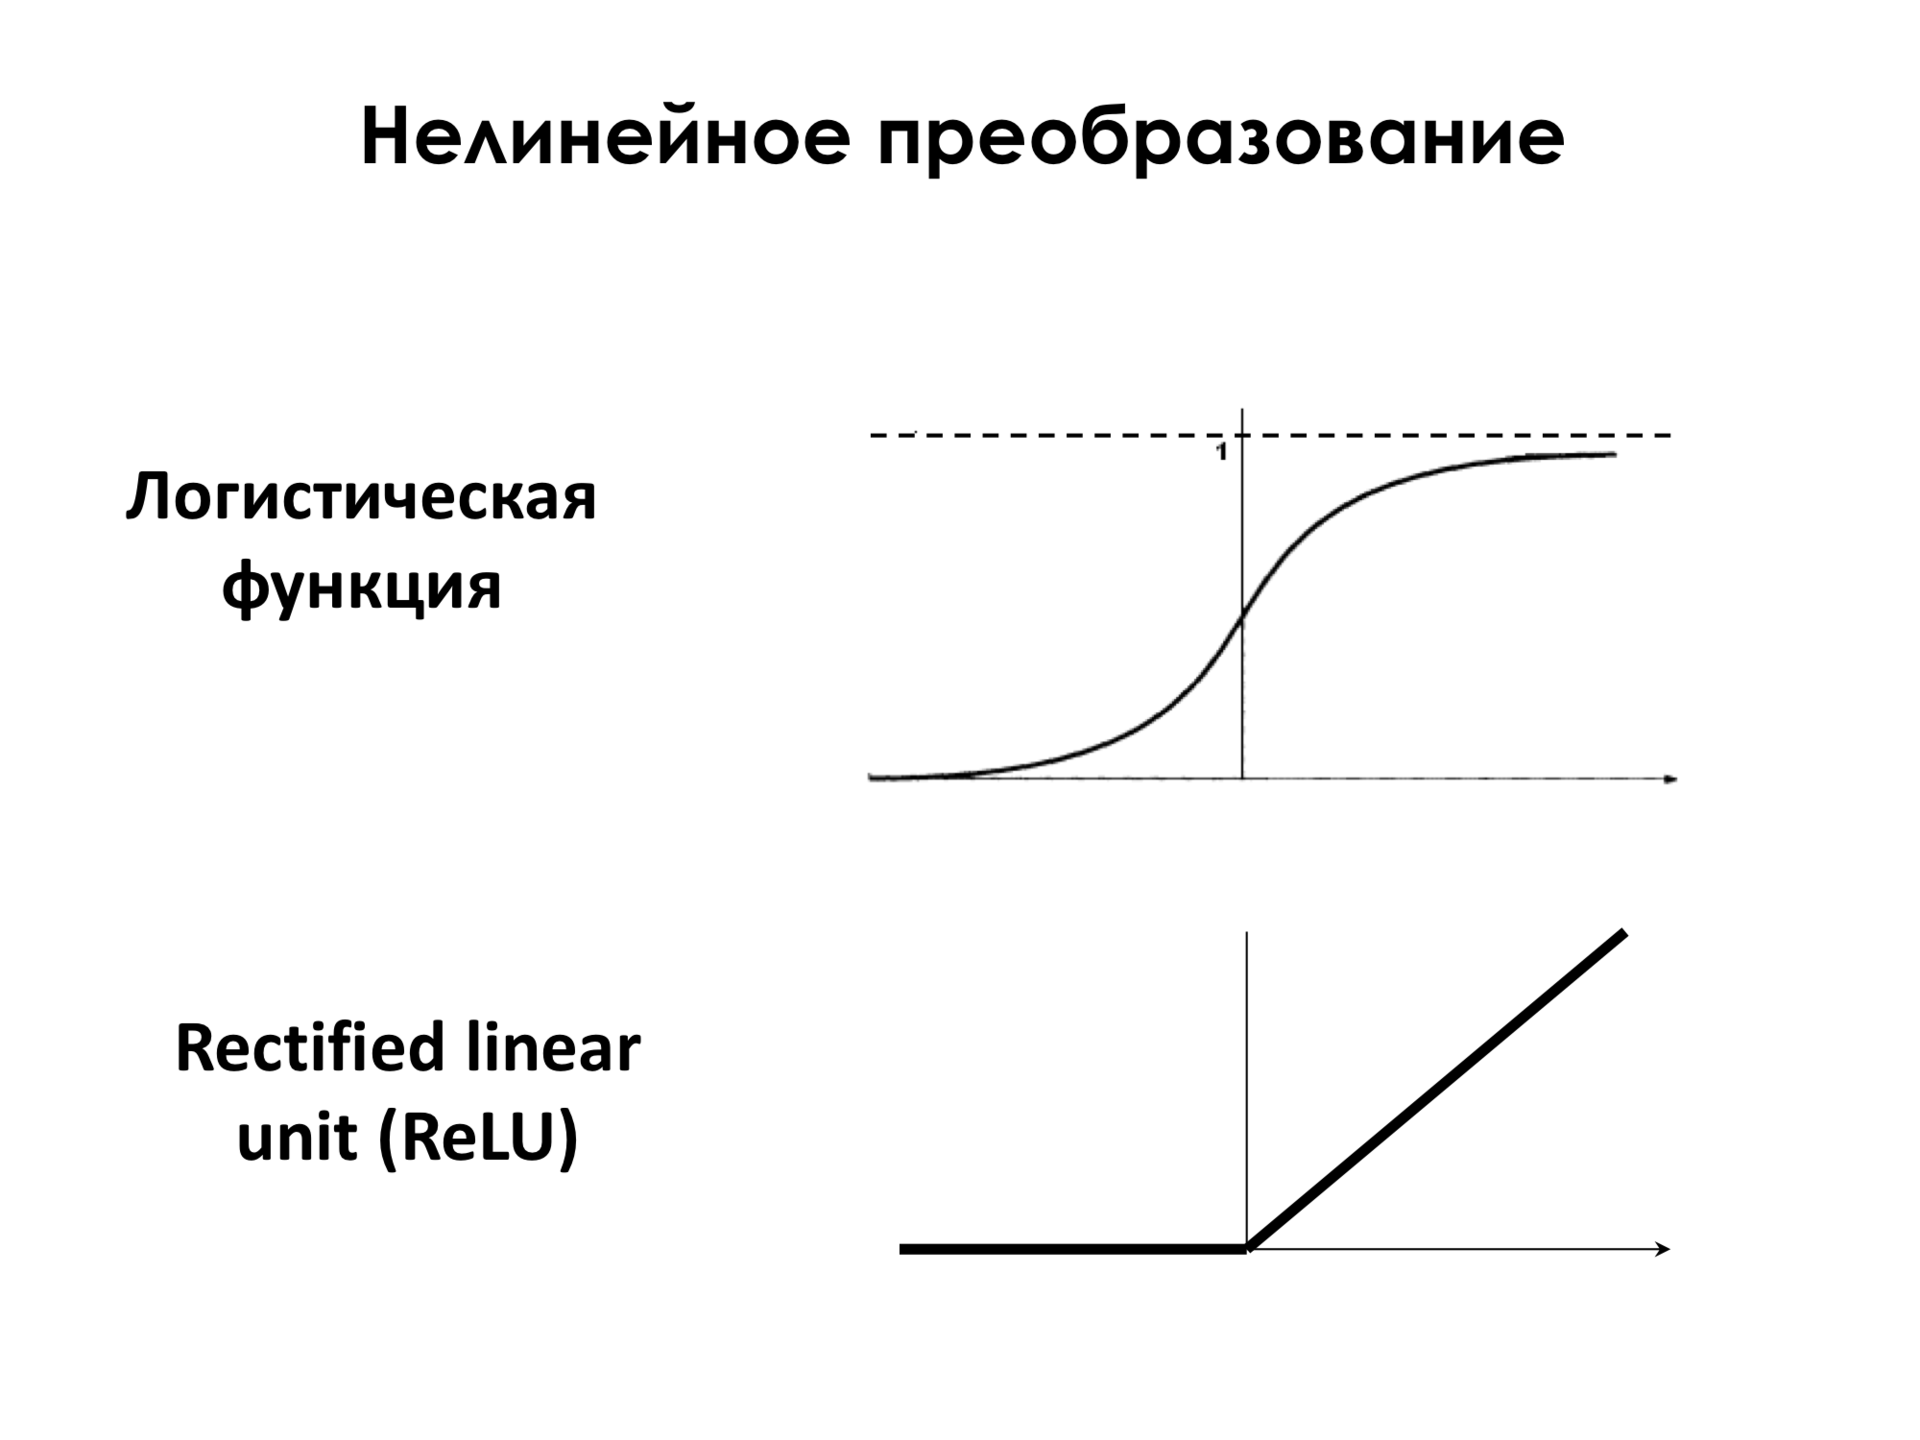 Самое главное о нейронных сетях. Лекция в Яндексе - 11